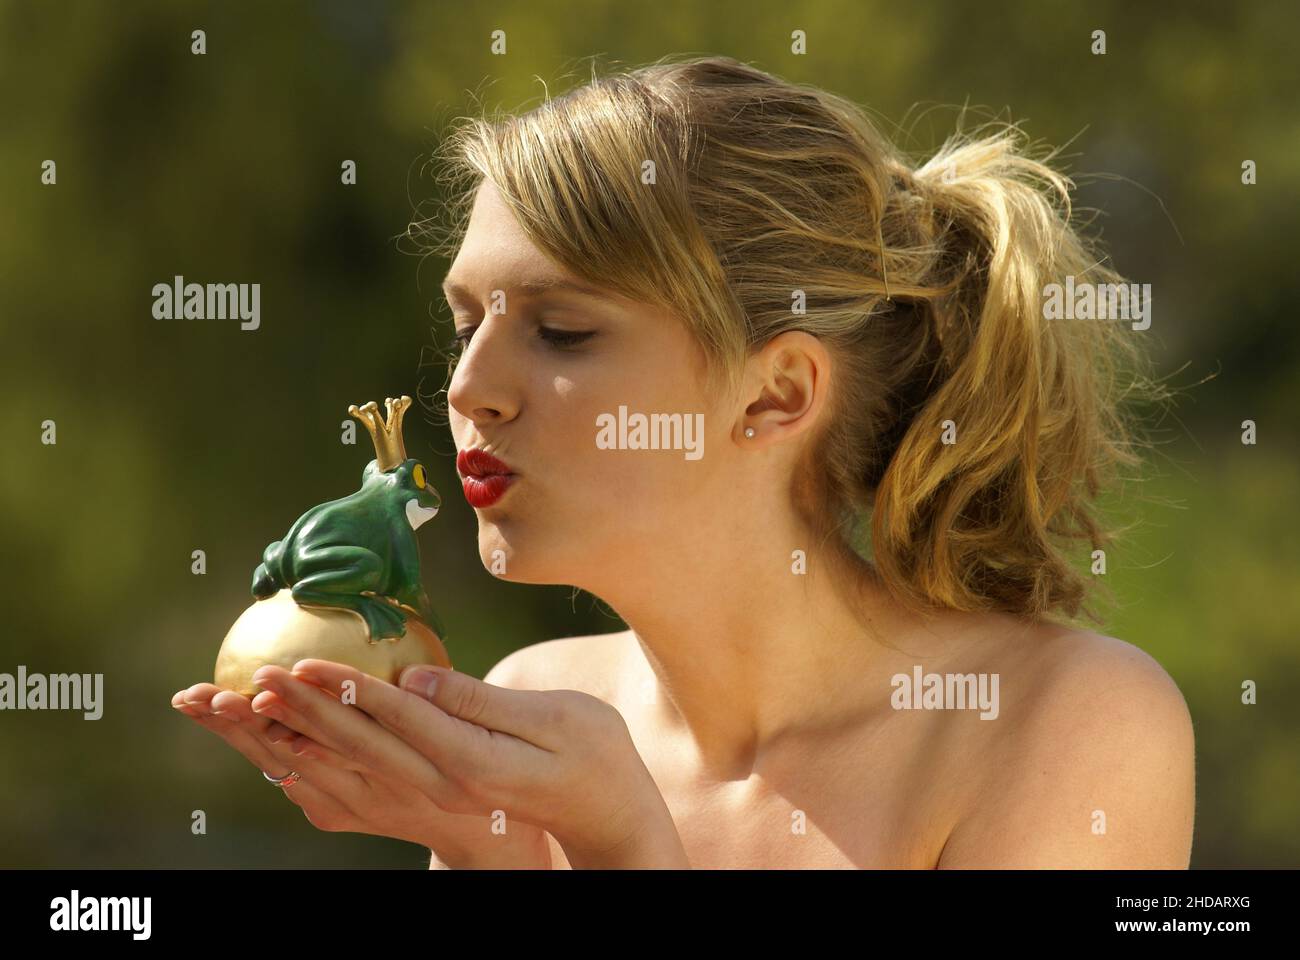 Junge Frau küsst einen Frosch mit Krone,  Froschkönig, Stock Photo